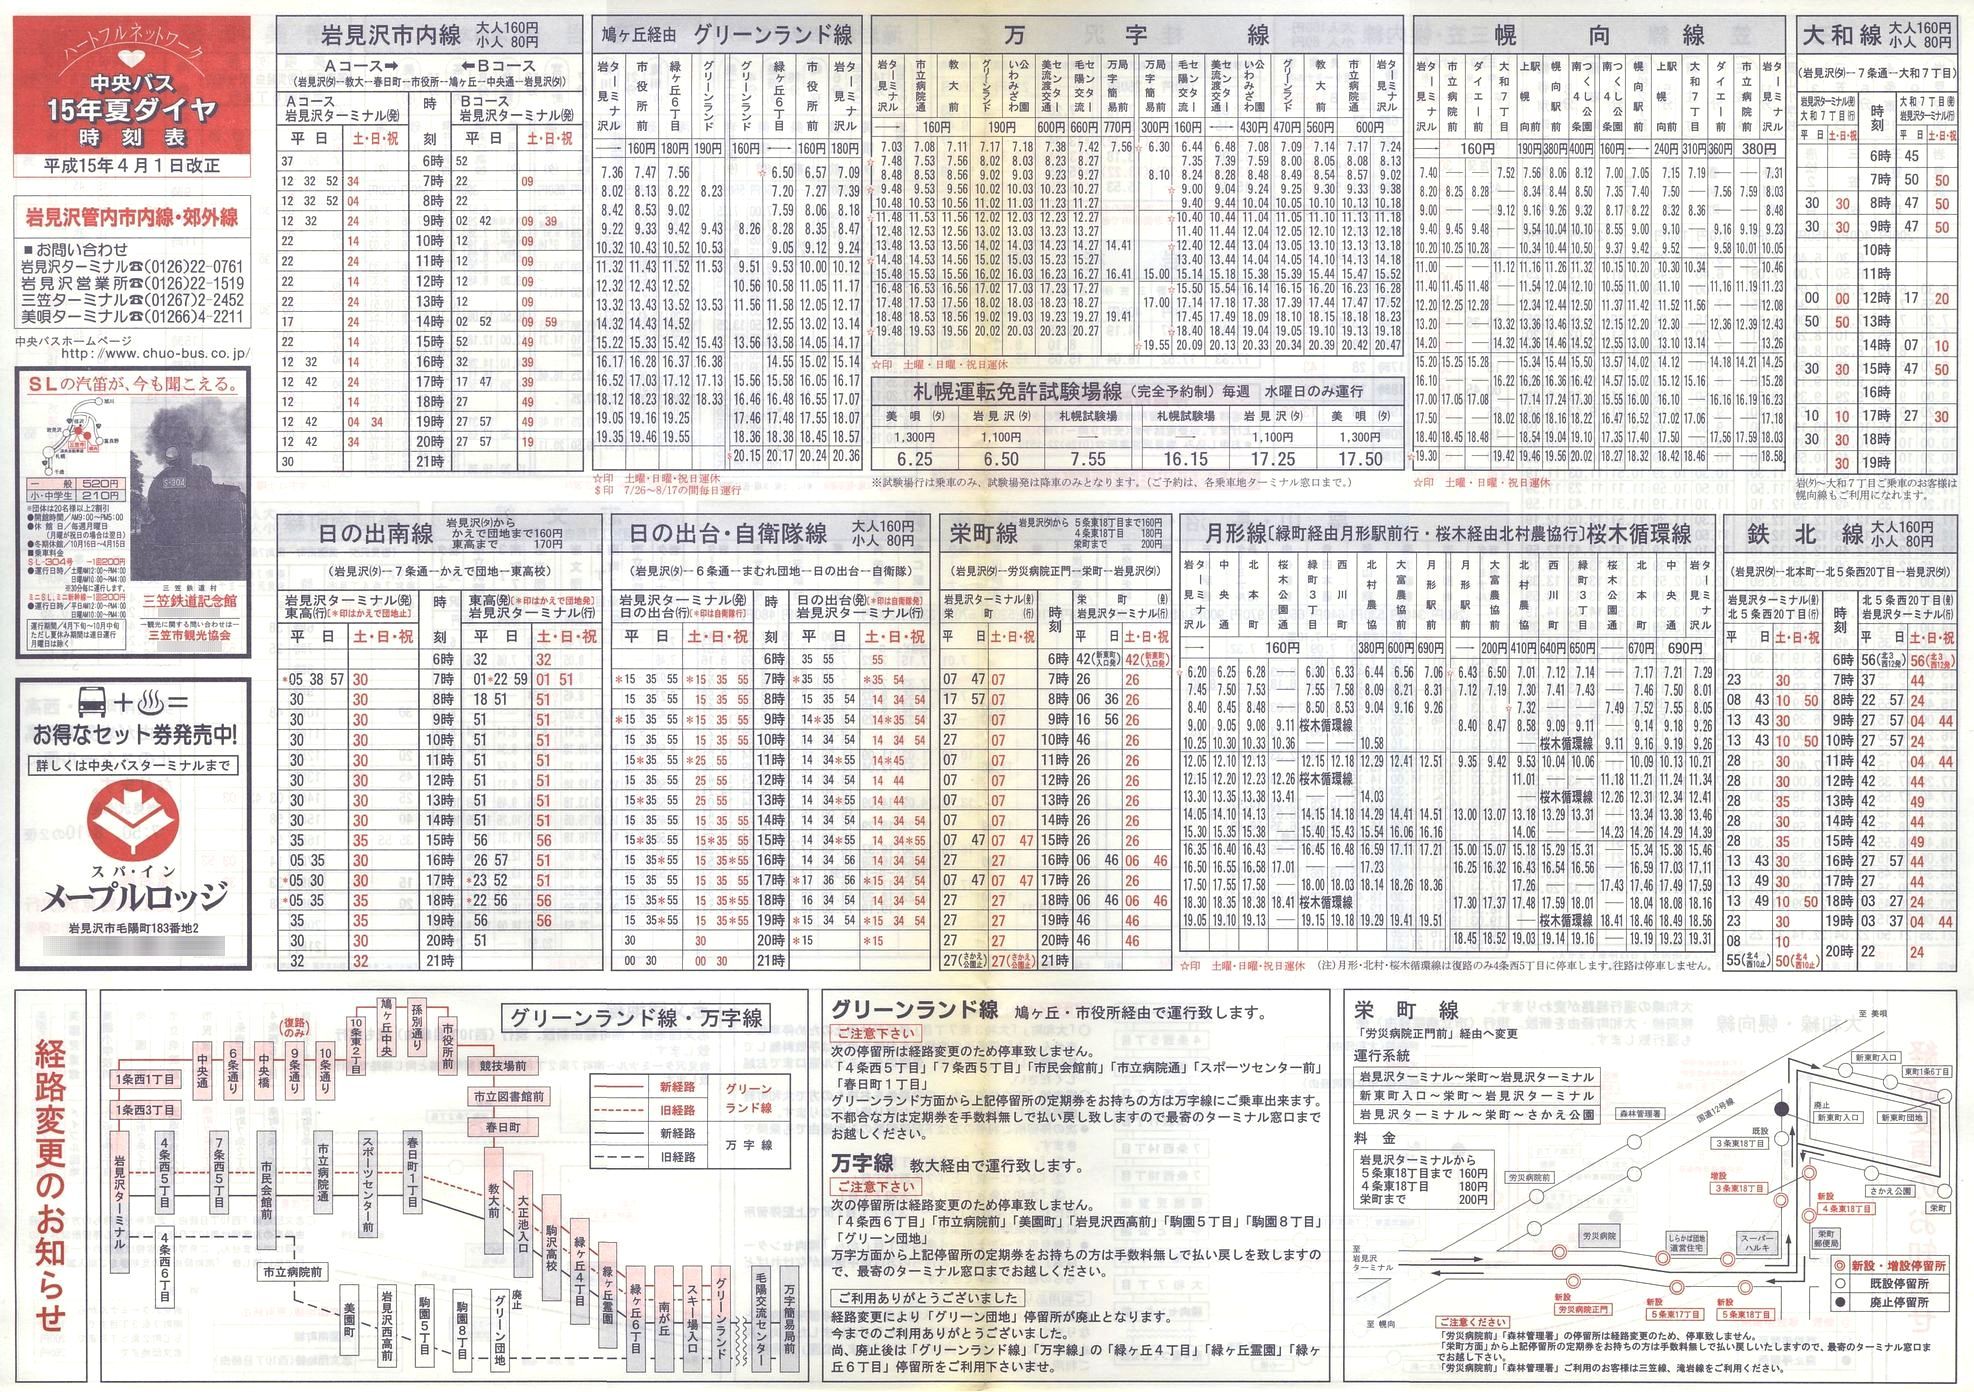 2003-04-01改正_北海道中央バス(空知)_岩見沢管内線時刻表表面